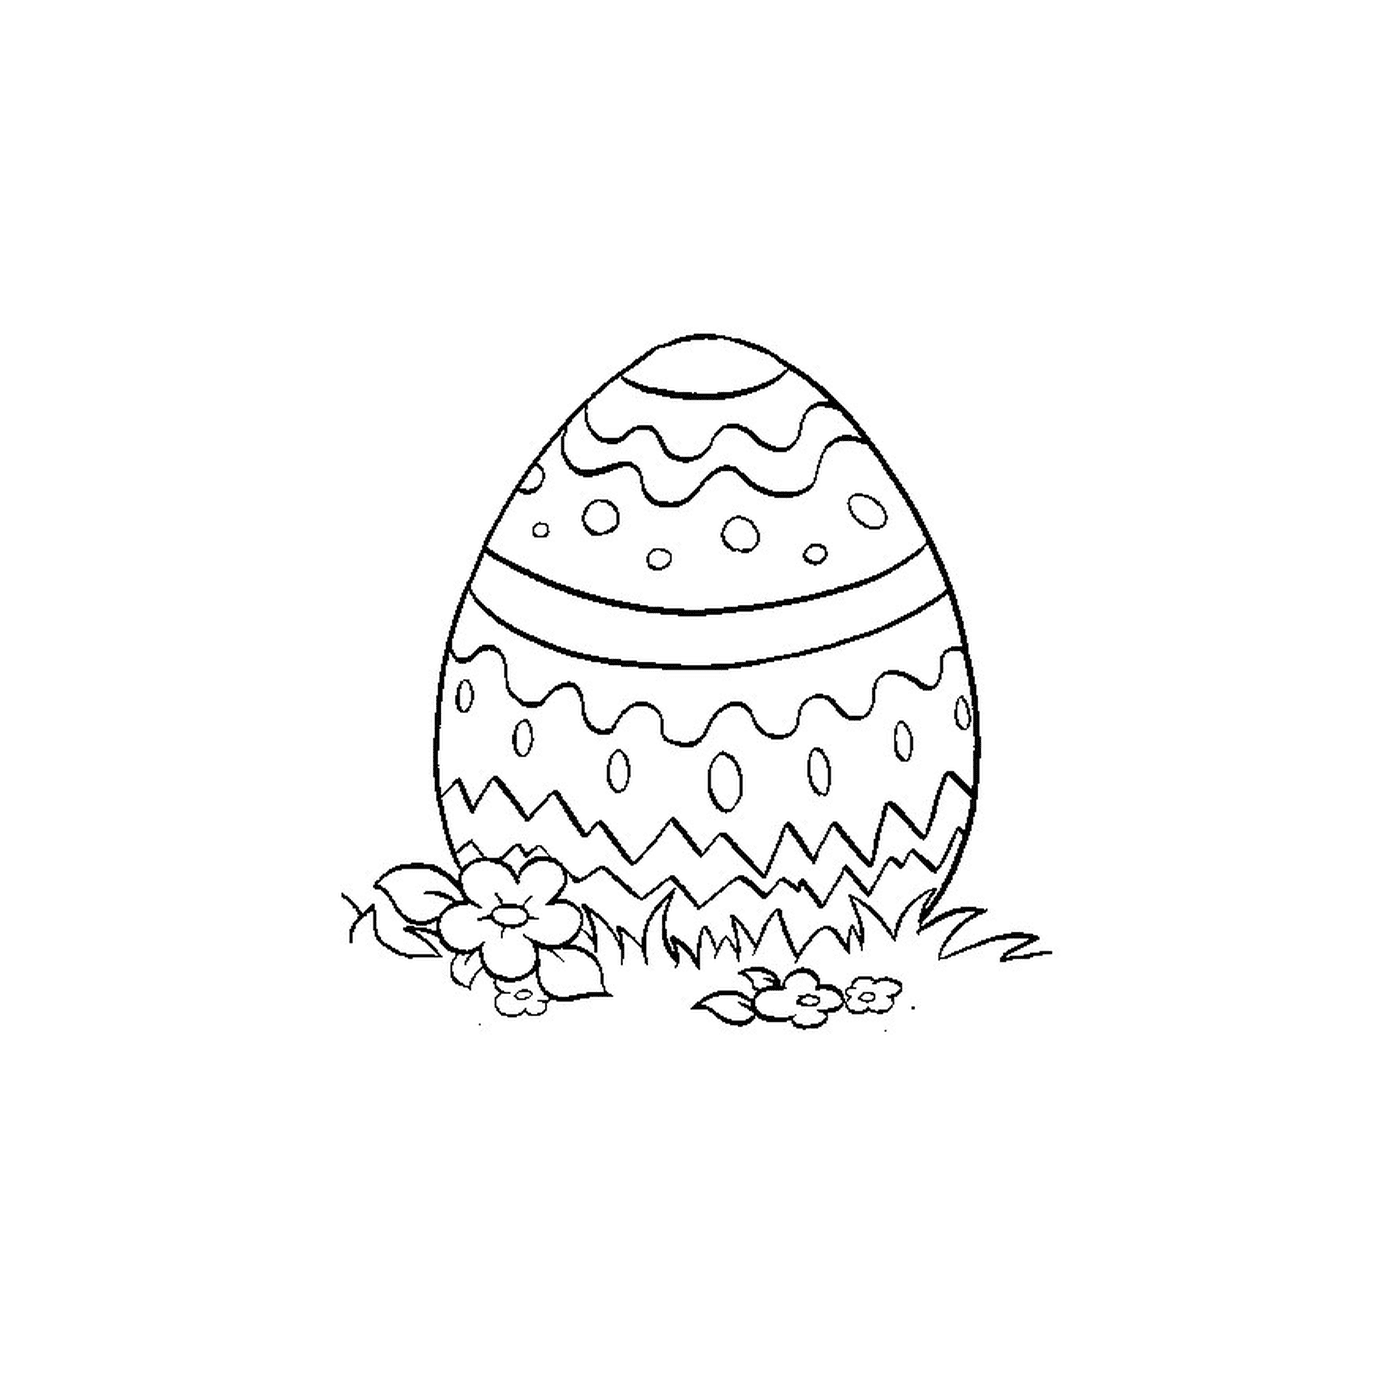  Пасхальное яйцо, уложенное в траву 